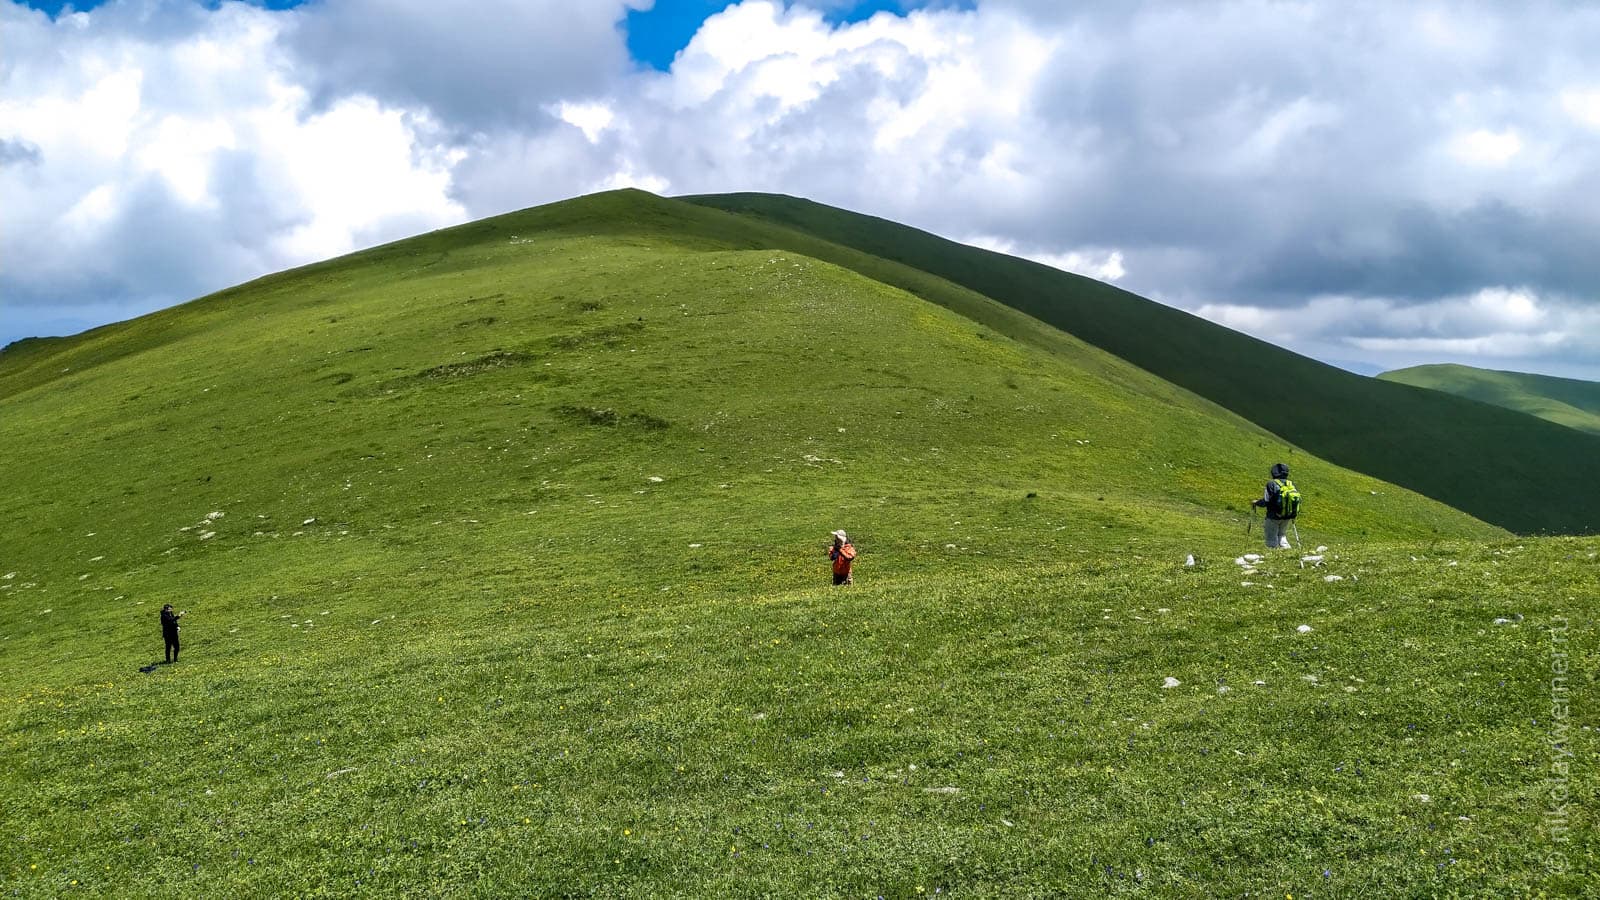 Трое туристов вотдалении среди зеленых холмистых вершин